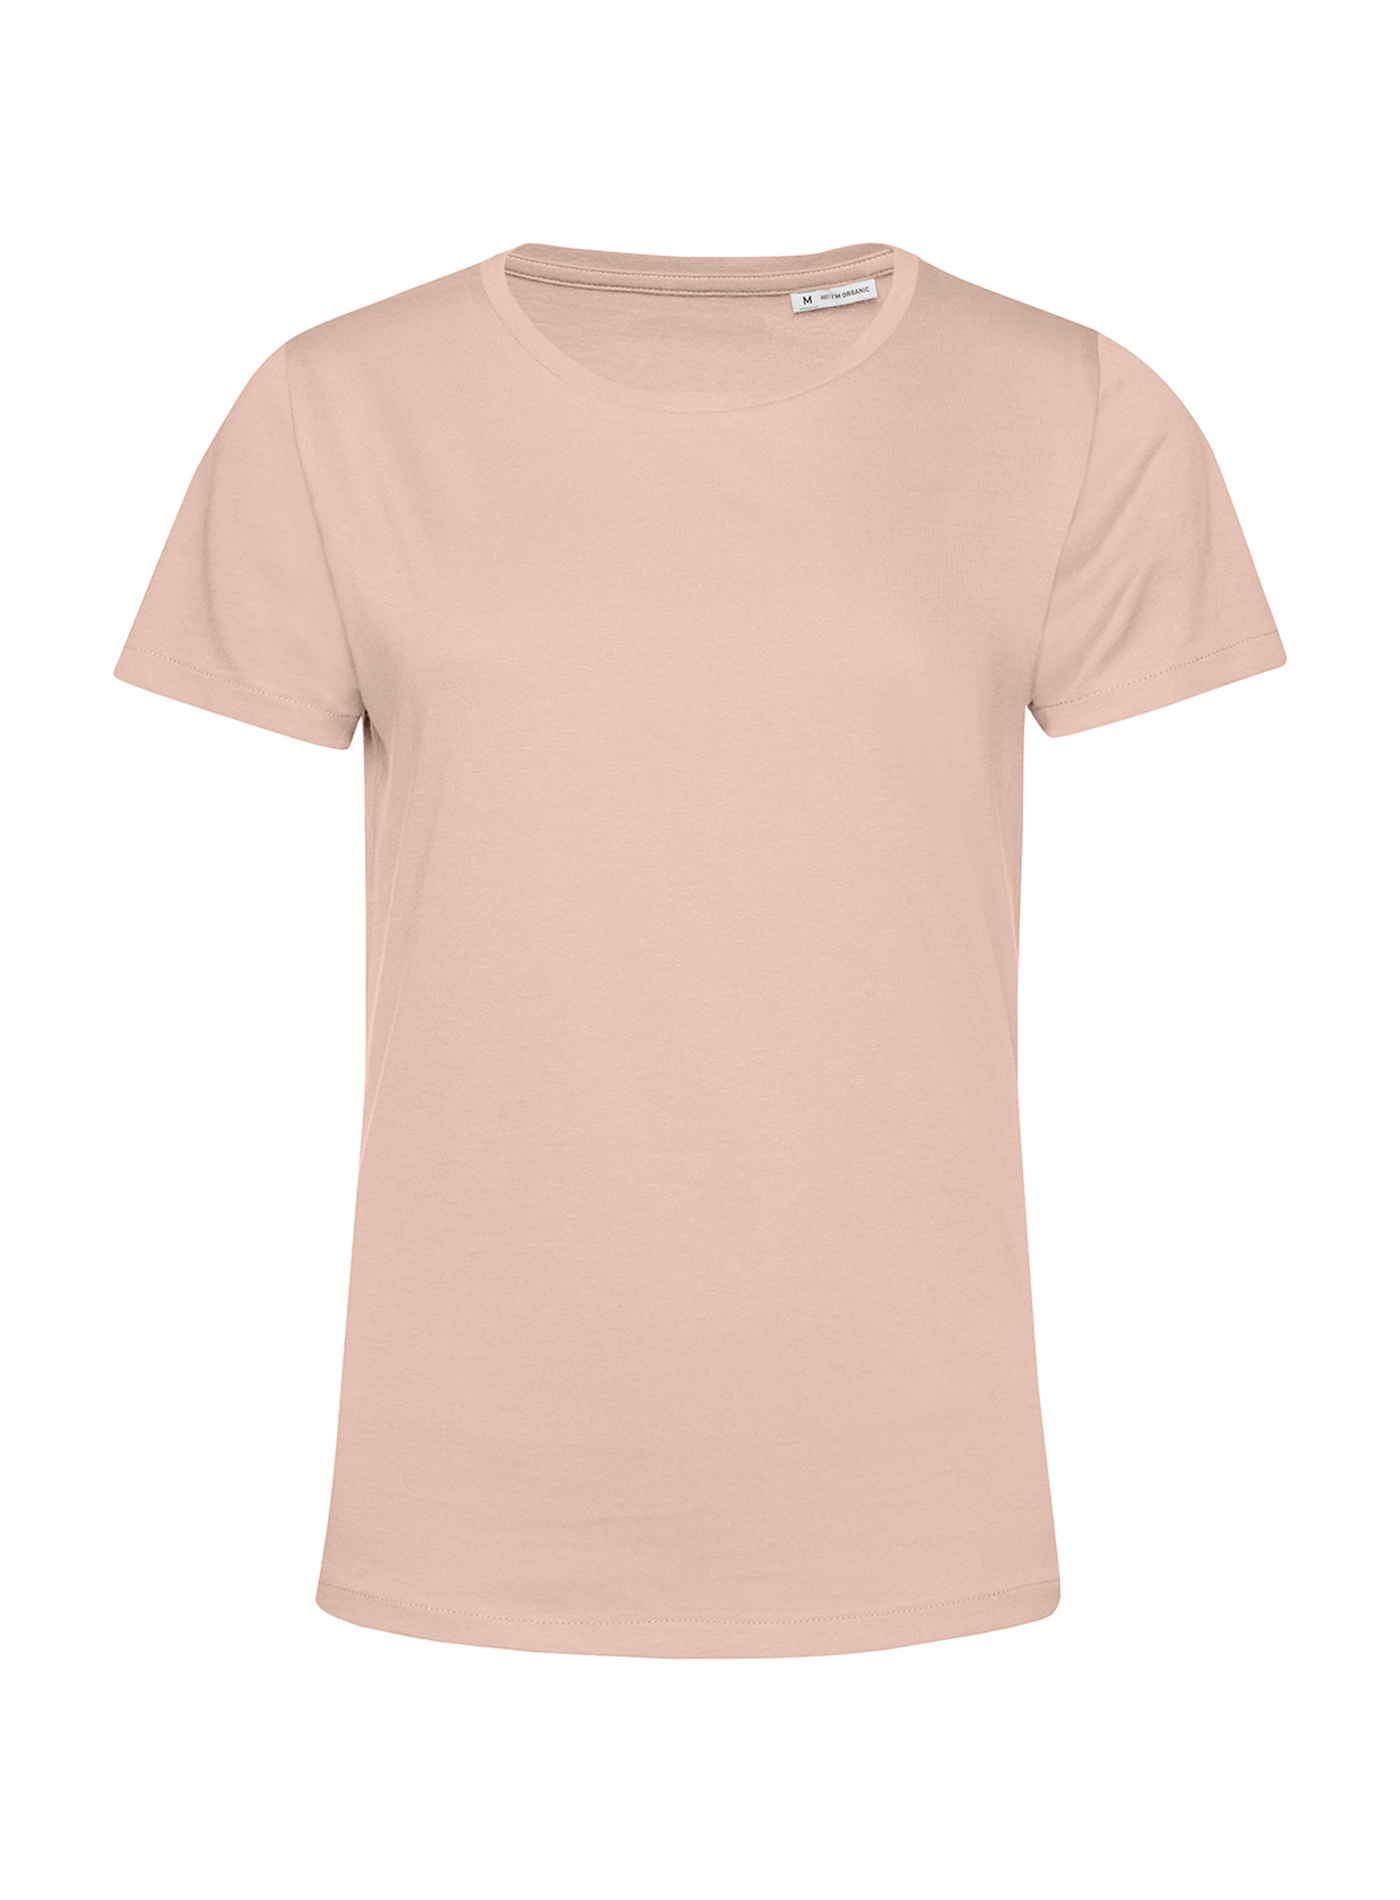 Dámské tričko B&C Collection Organic - Bledě růžová XS